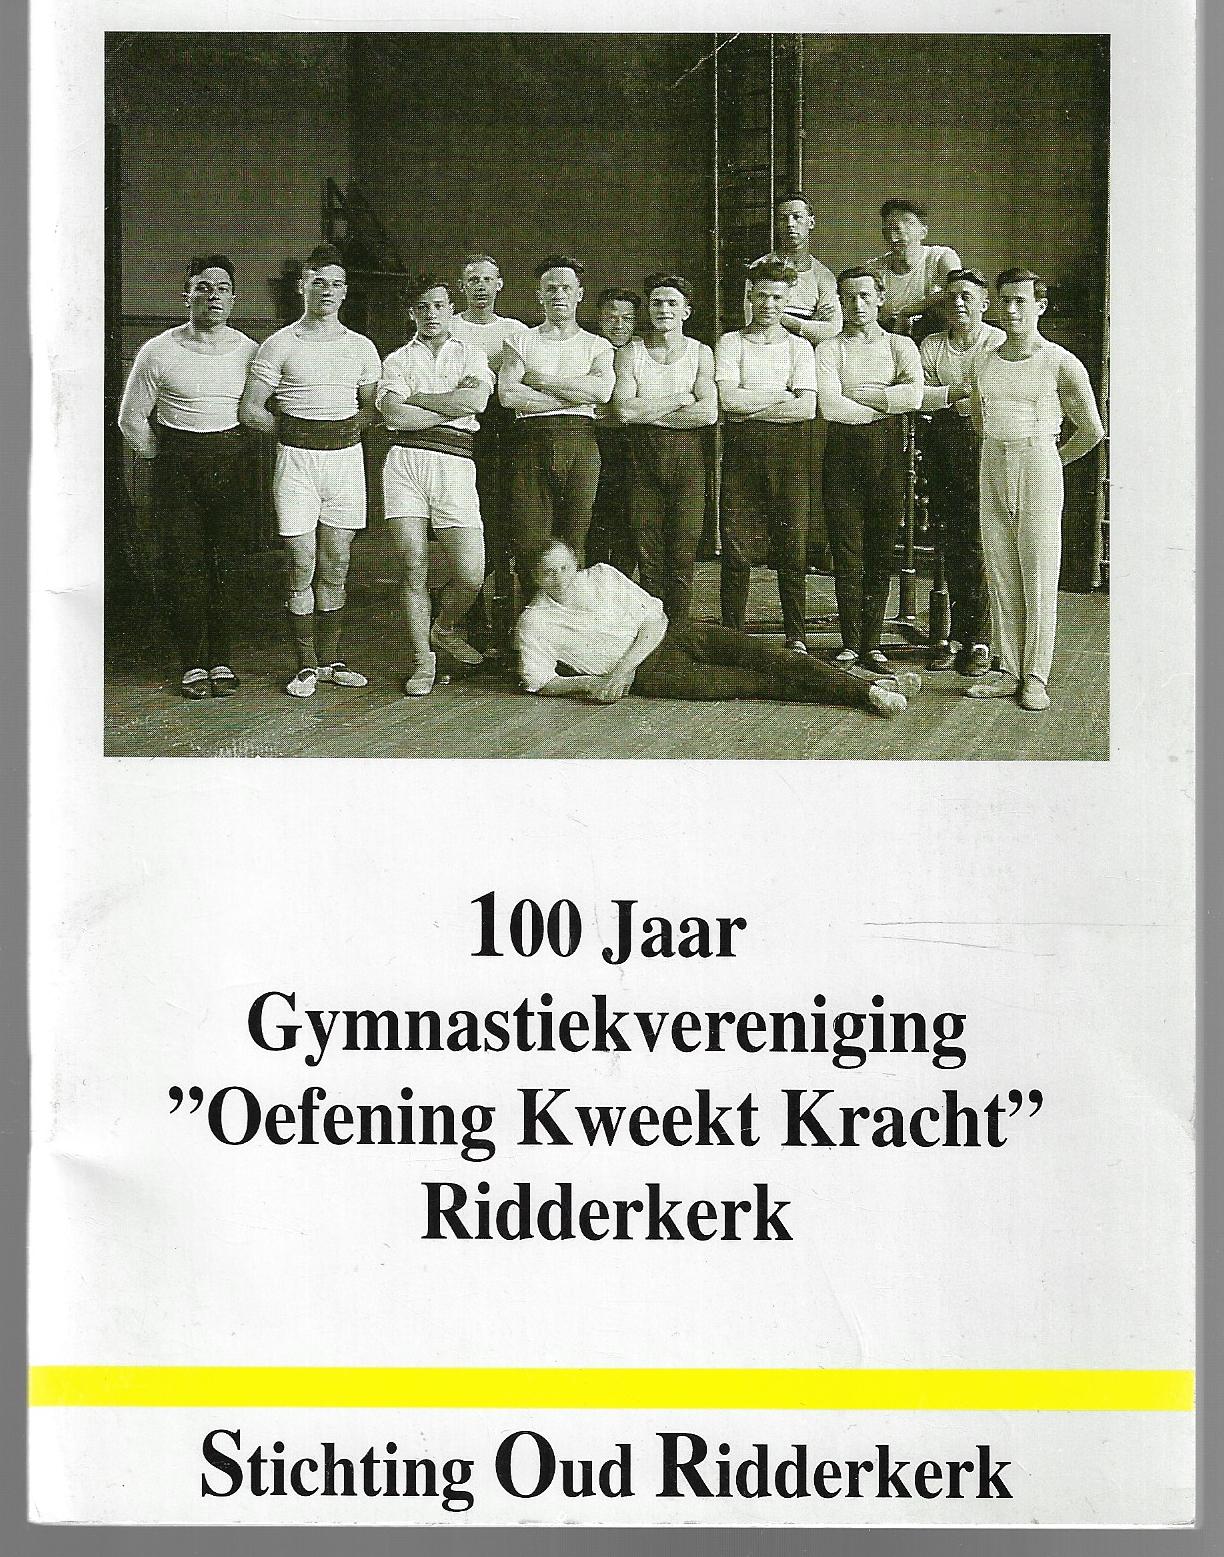 Mul Hollander, C. en Bisdom, C.W. - 100 Jaar Gymnastiekvereniging 'Oefening Kweekt Kracht' Ridderkerk -1895-1995